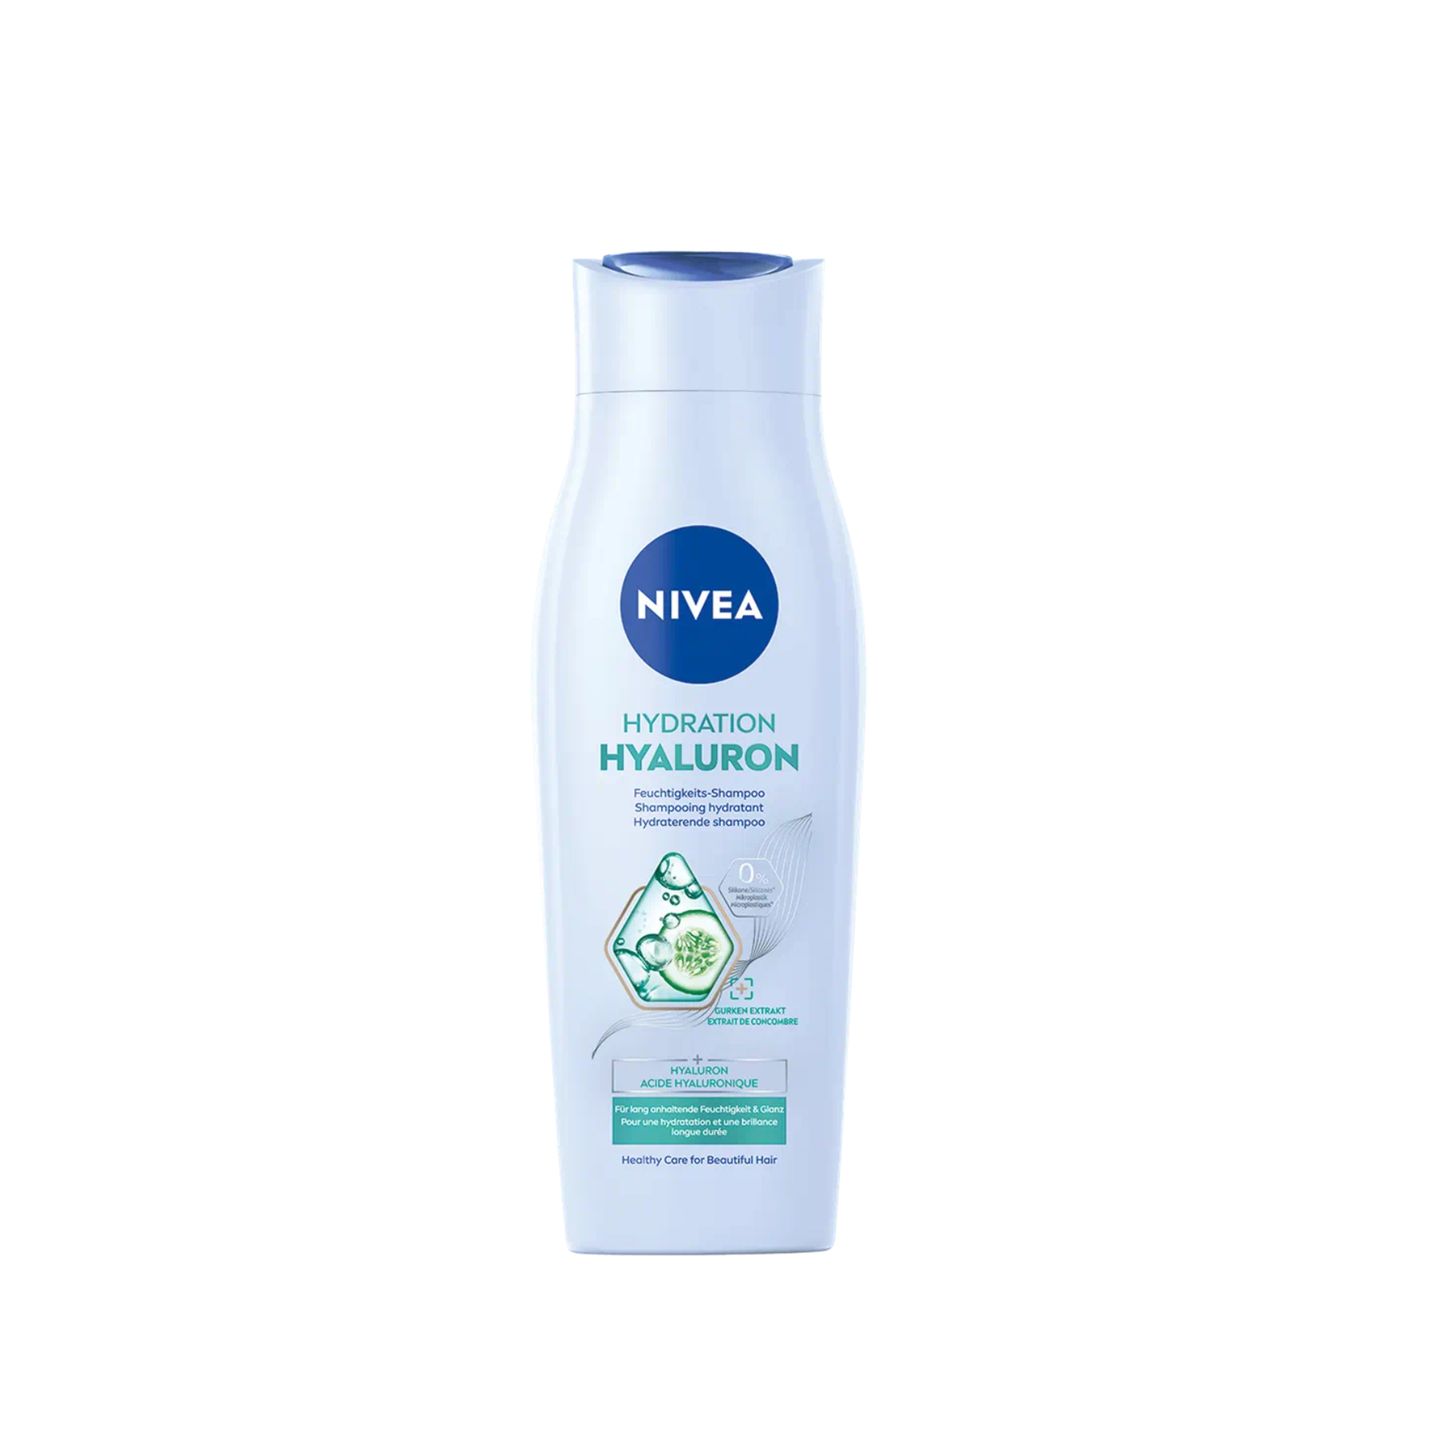 Für uns gehört Hyaluronsäure nicht nur ins Gesicht, sondern auch auf die Haare. Der neuartige Komplex aus hochwirksamen Hyaluron und natürlichen Gurken-Extrakt des Hydration-Hyaluron-Feuchtigkeits-Shampoos von Nivea versorgt das Haar mit genügend Feuchtigkeit, ohne das Haar zu beschweren. Das Produkt ist vegan und ohne Mikroplastik und Silikon. Shampoo für ca. 2,50 Euro. 